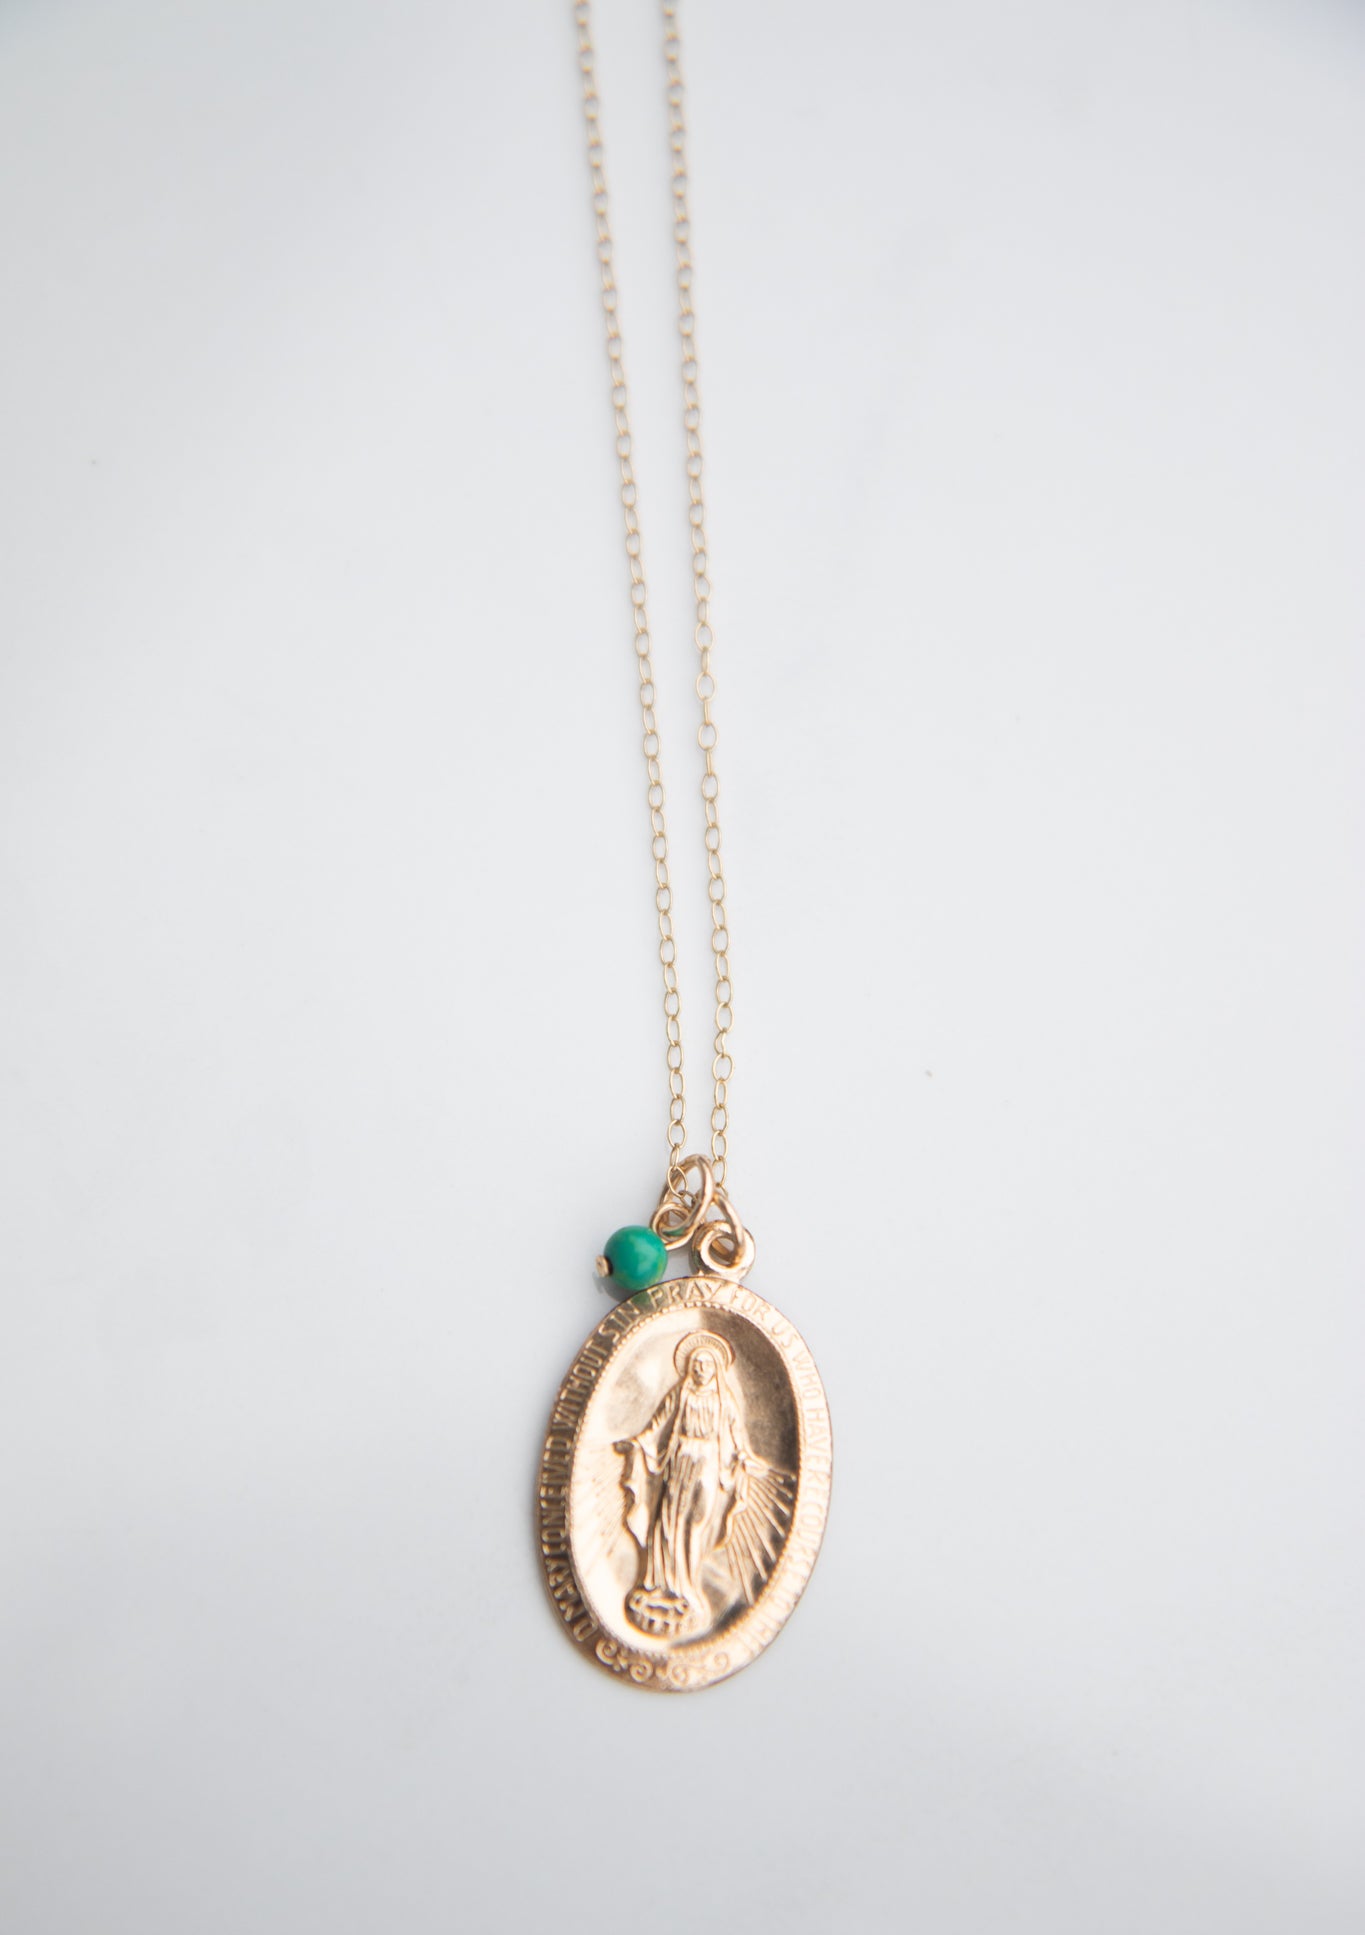 La Virgen María oval shaped medalion Necklace